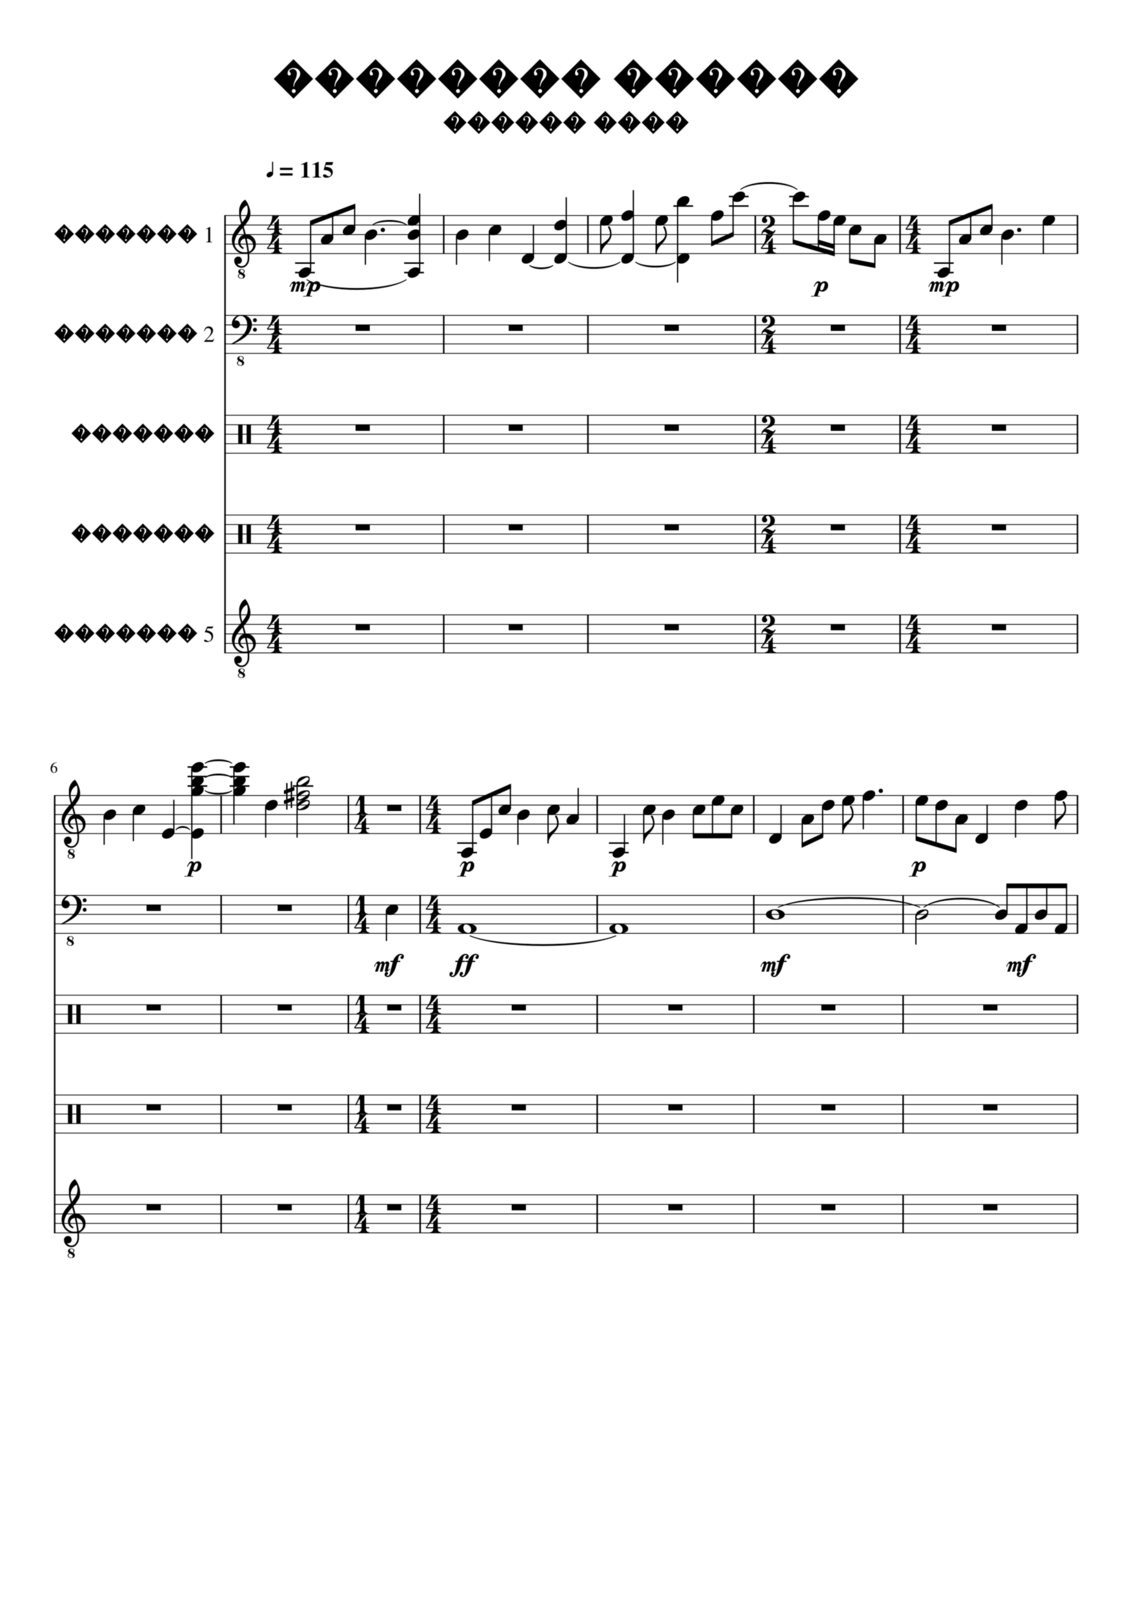 Zvezdnyiy vodoem slide, Image 1